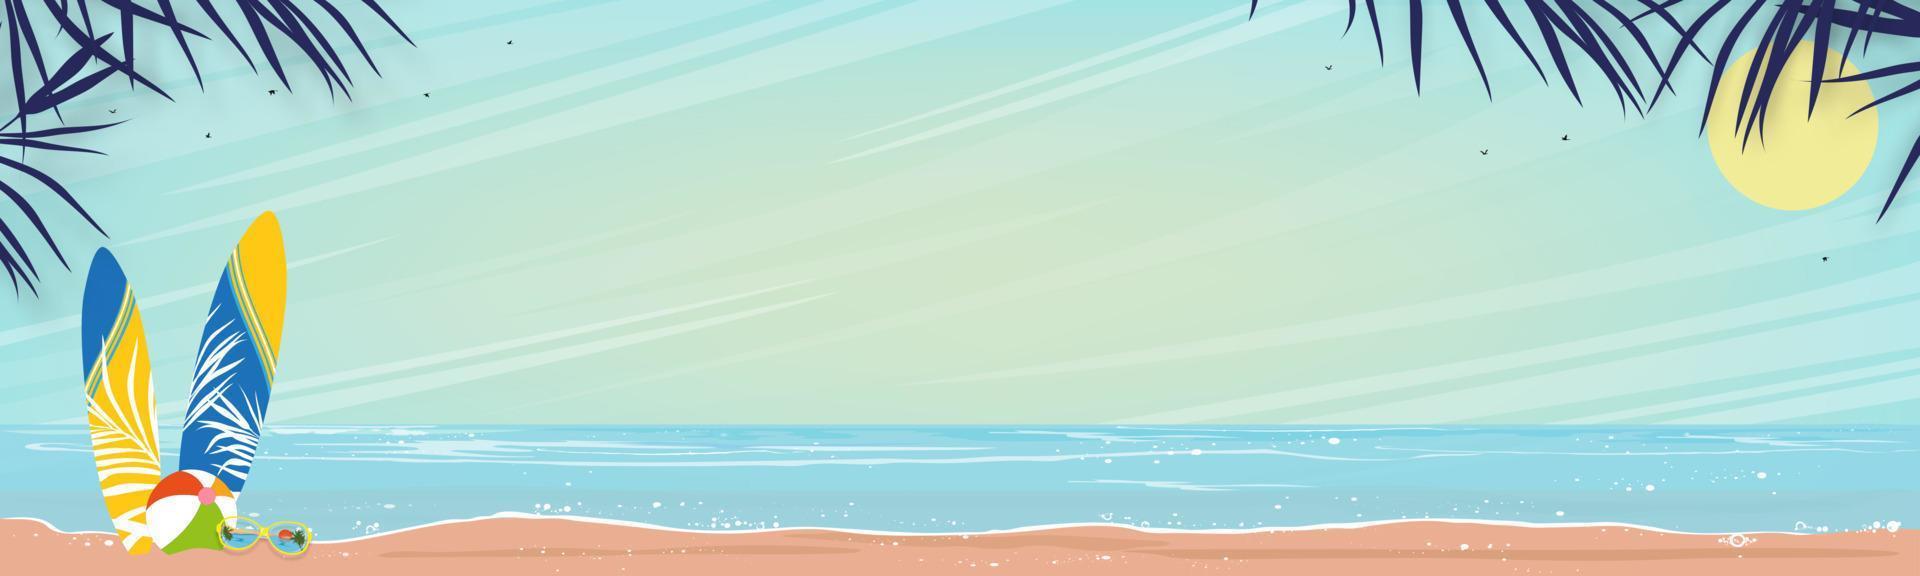 Meereslandschaft des blauen Ozeans und Kokospalme auf der Insel, horizontaler Meeresstrand, Sand mit blauem Himmel und flauschiger Wolke, Vektorgrafik schöne Natur der Landschaft am Meer für Sommerferienhintergrund vektor